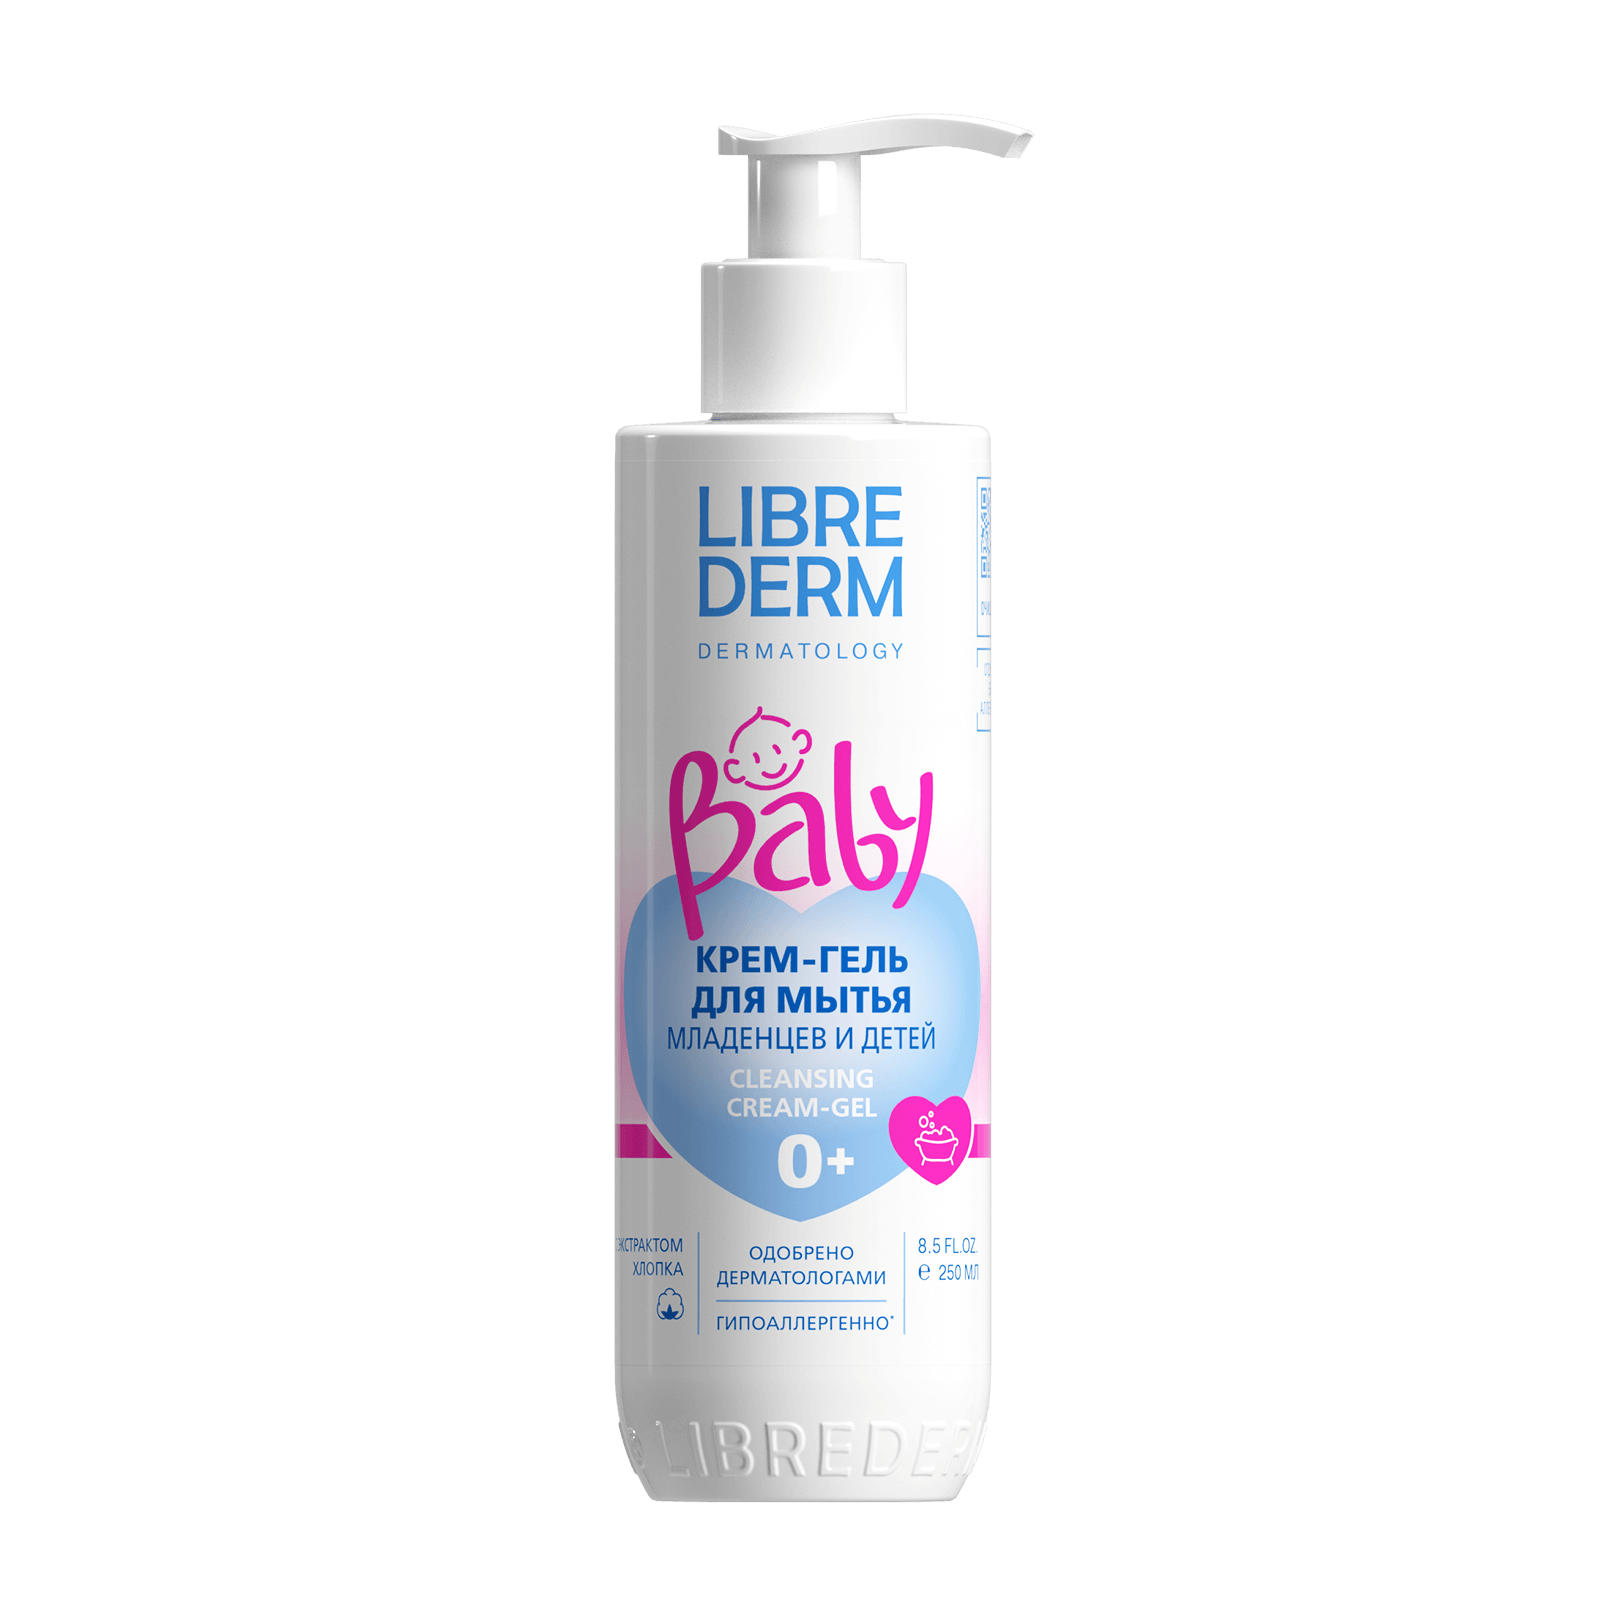 Librederm Baby, крем-гель для мытья новорожденных младенцев и детей 250 мл